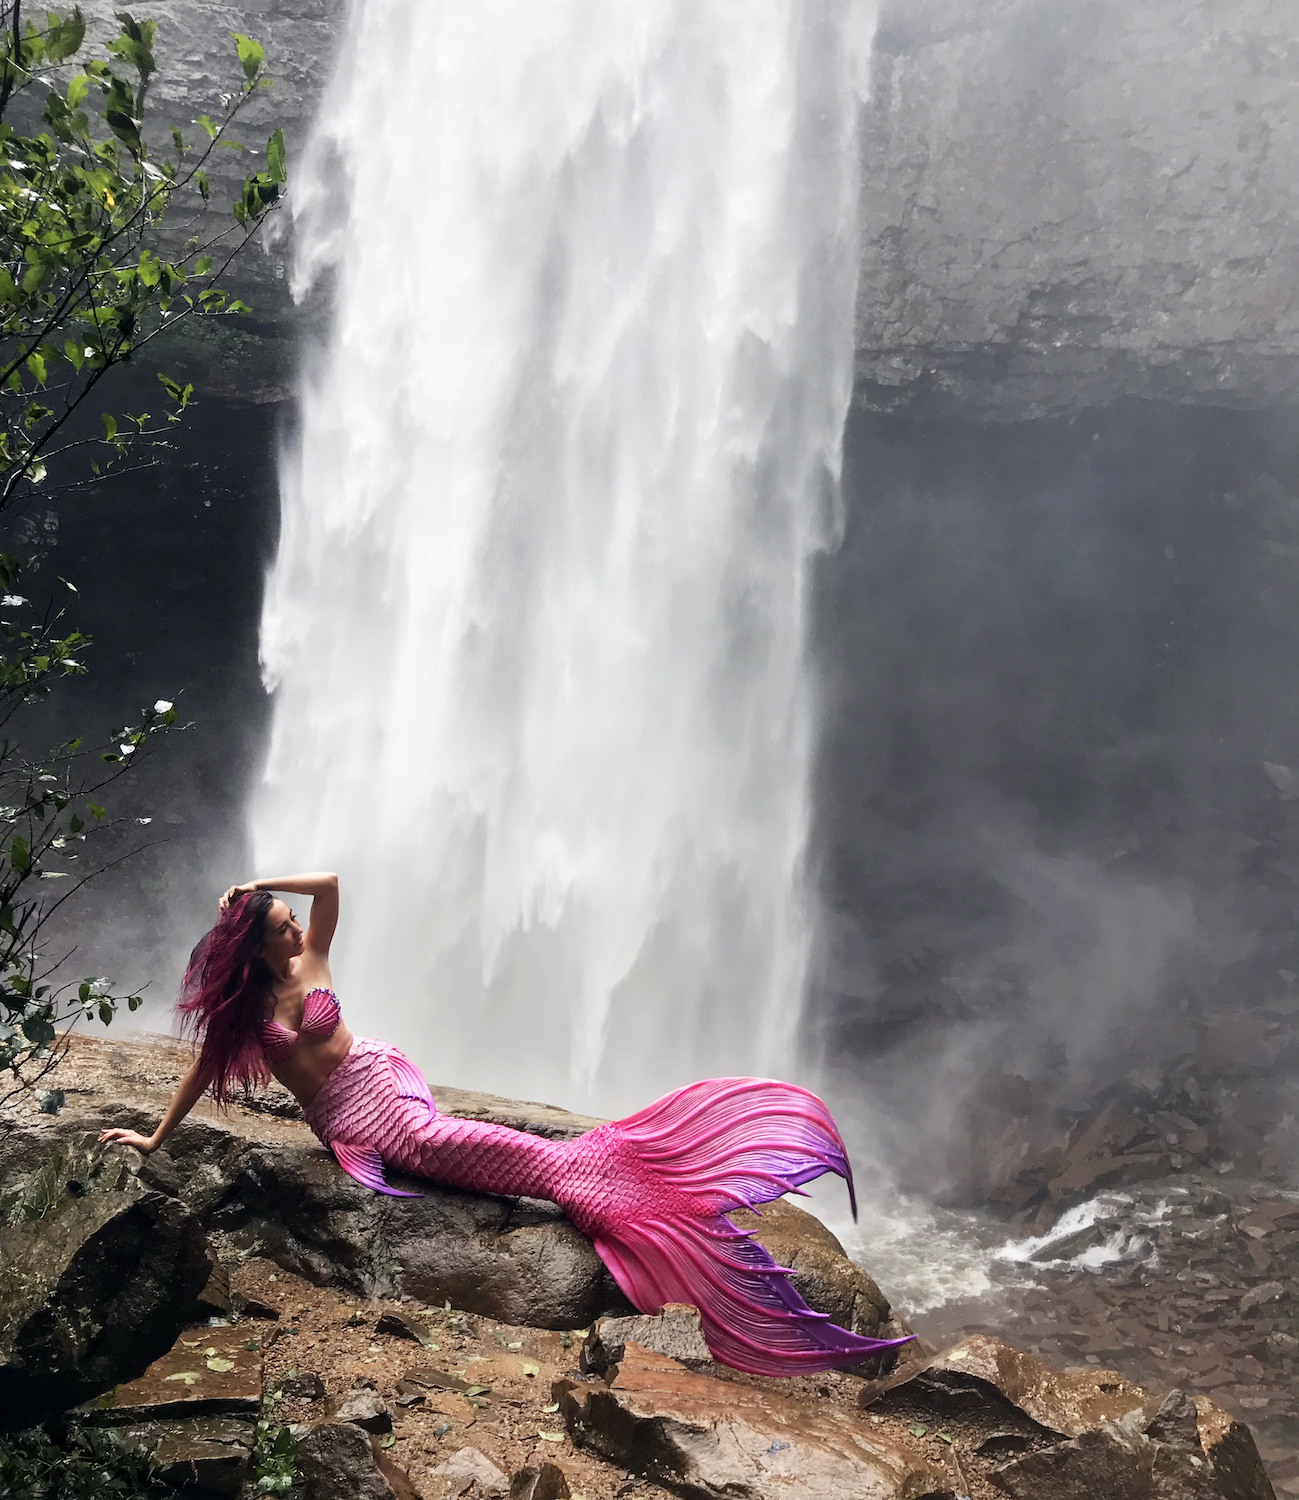 mermaid on the side model pose waterfall